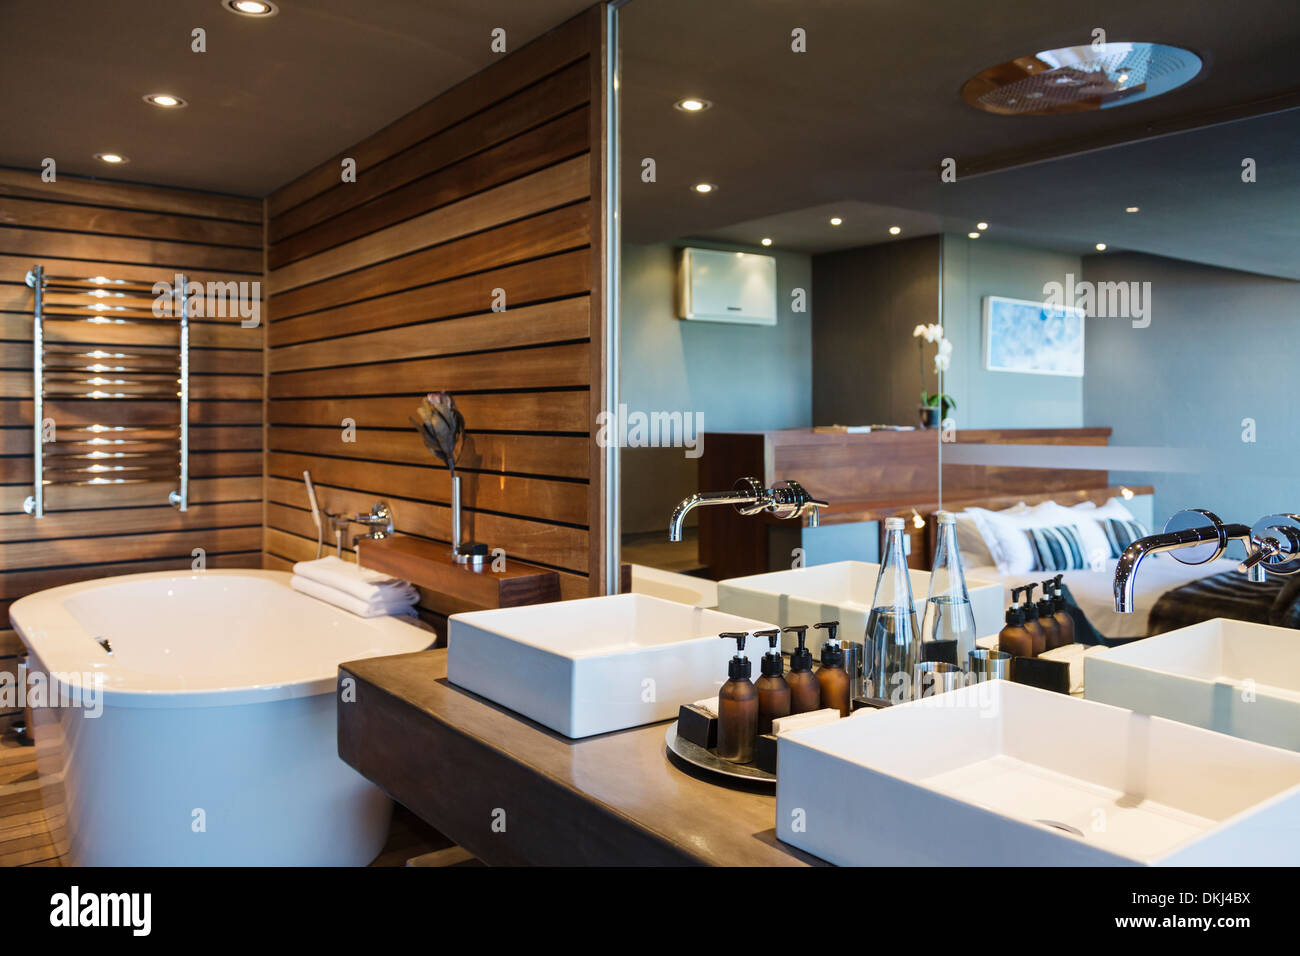 Vasque et baignoire dans salle de bains moderne Banque D'Images